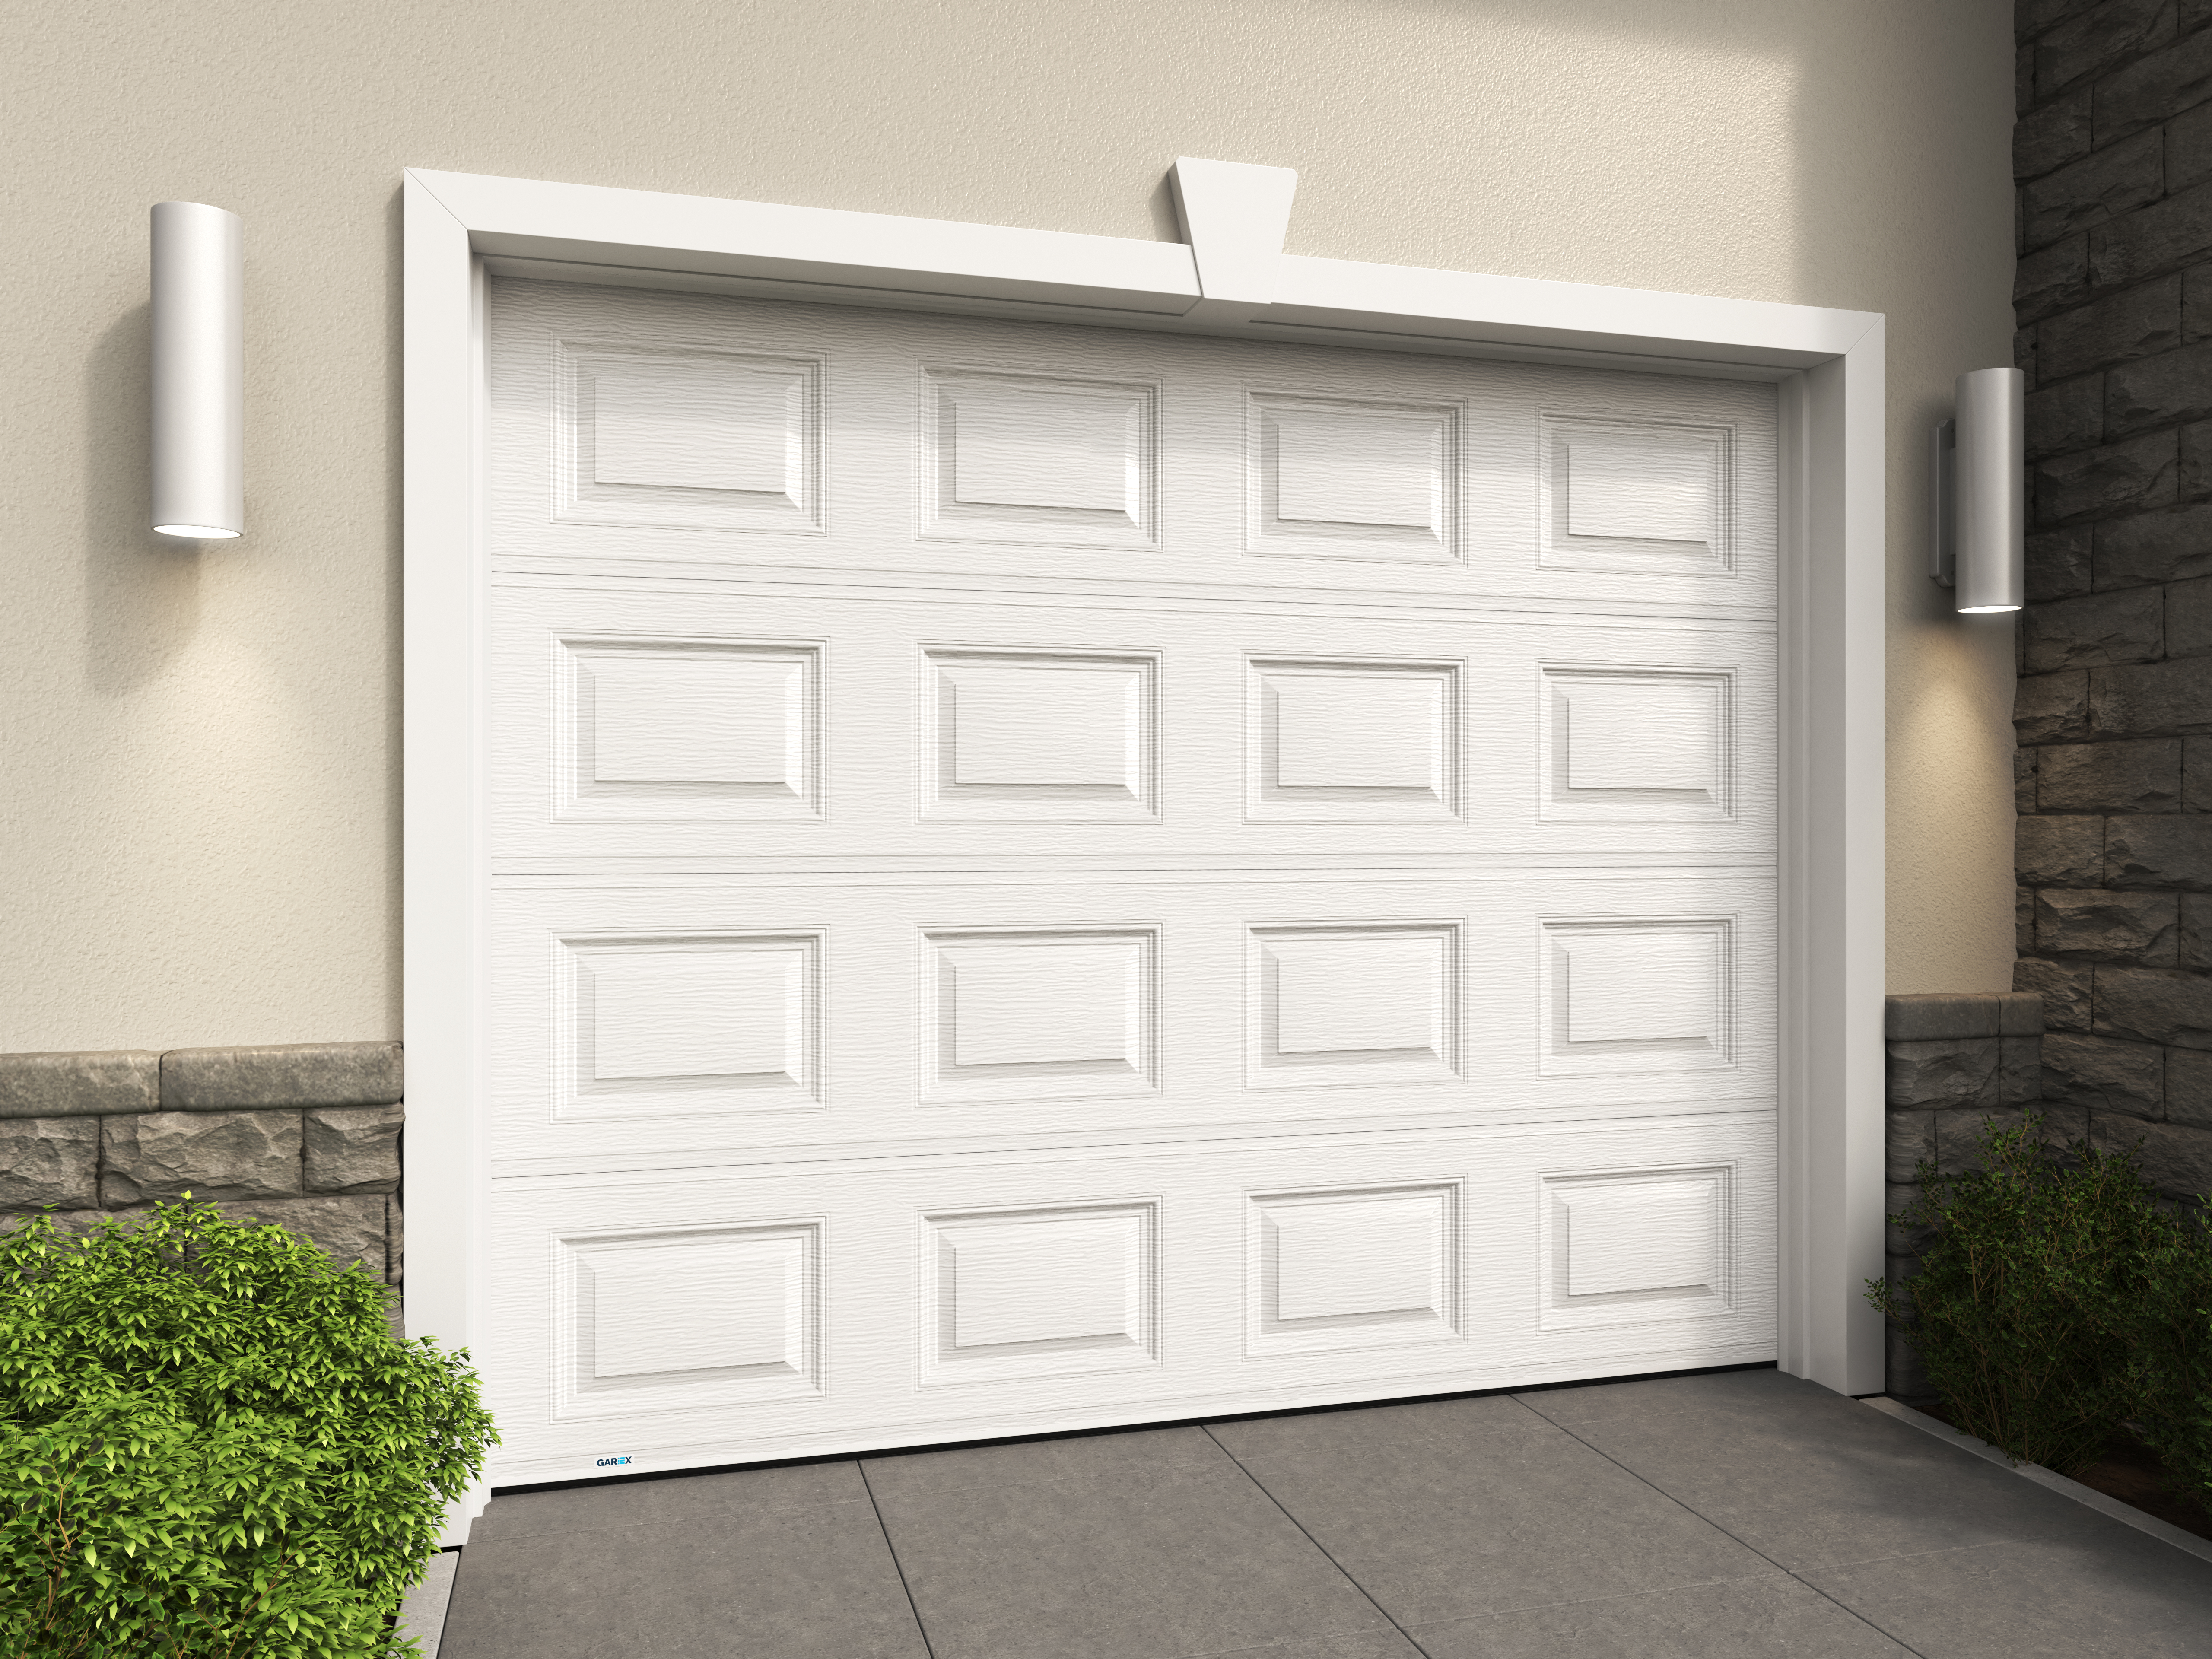 Garage Door Residential Commercial And Industrial Garage